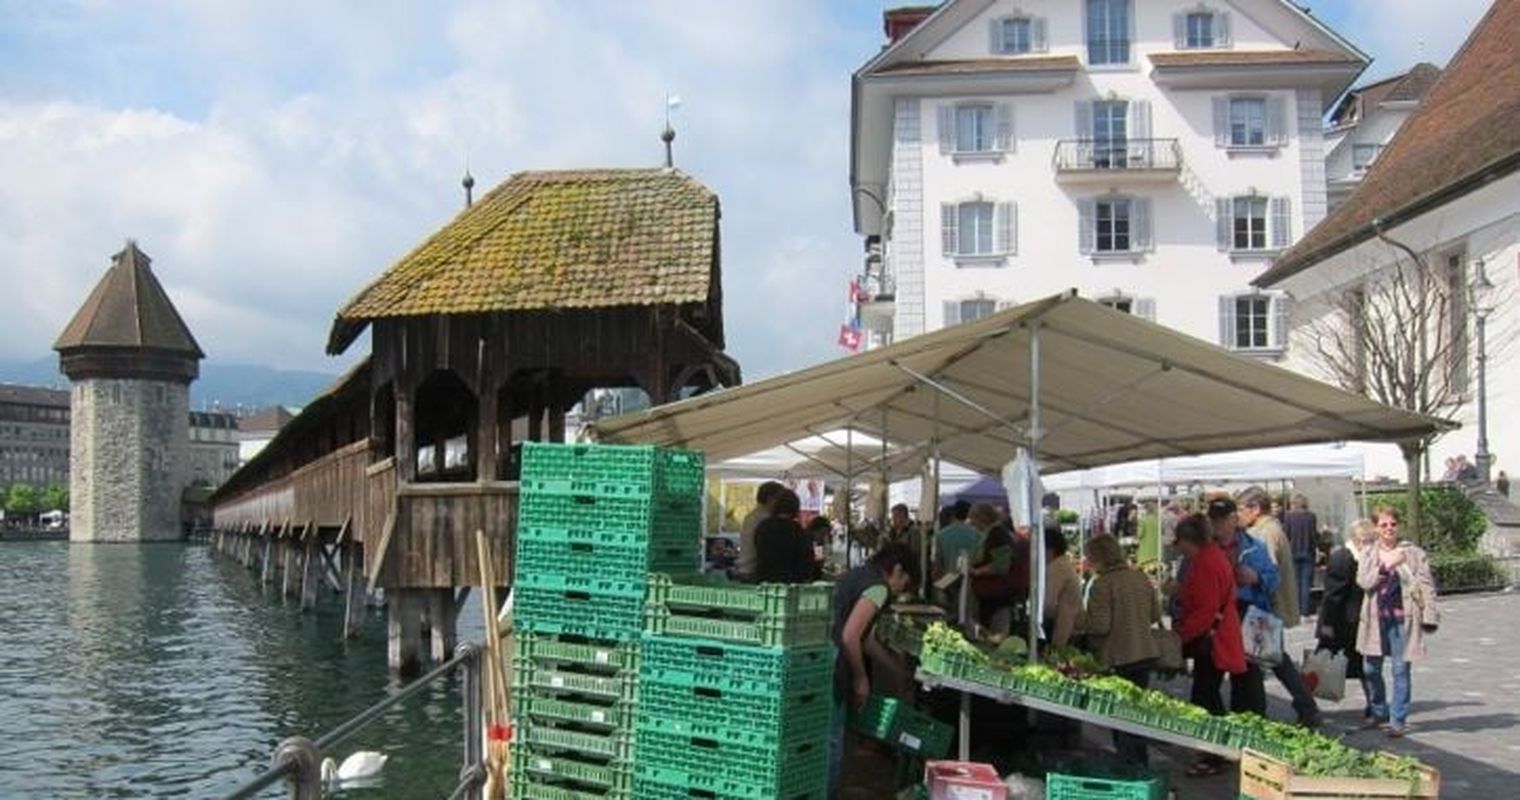 Wochenmarkt #1: Luzern